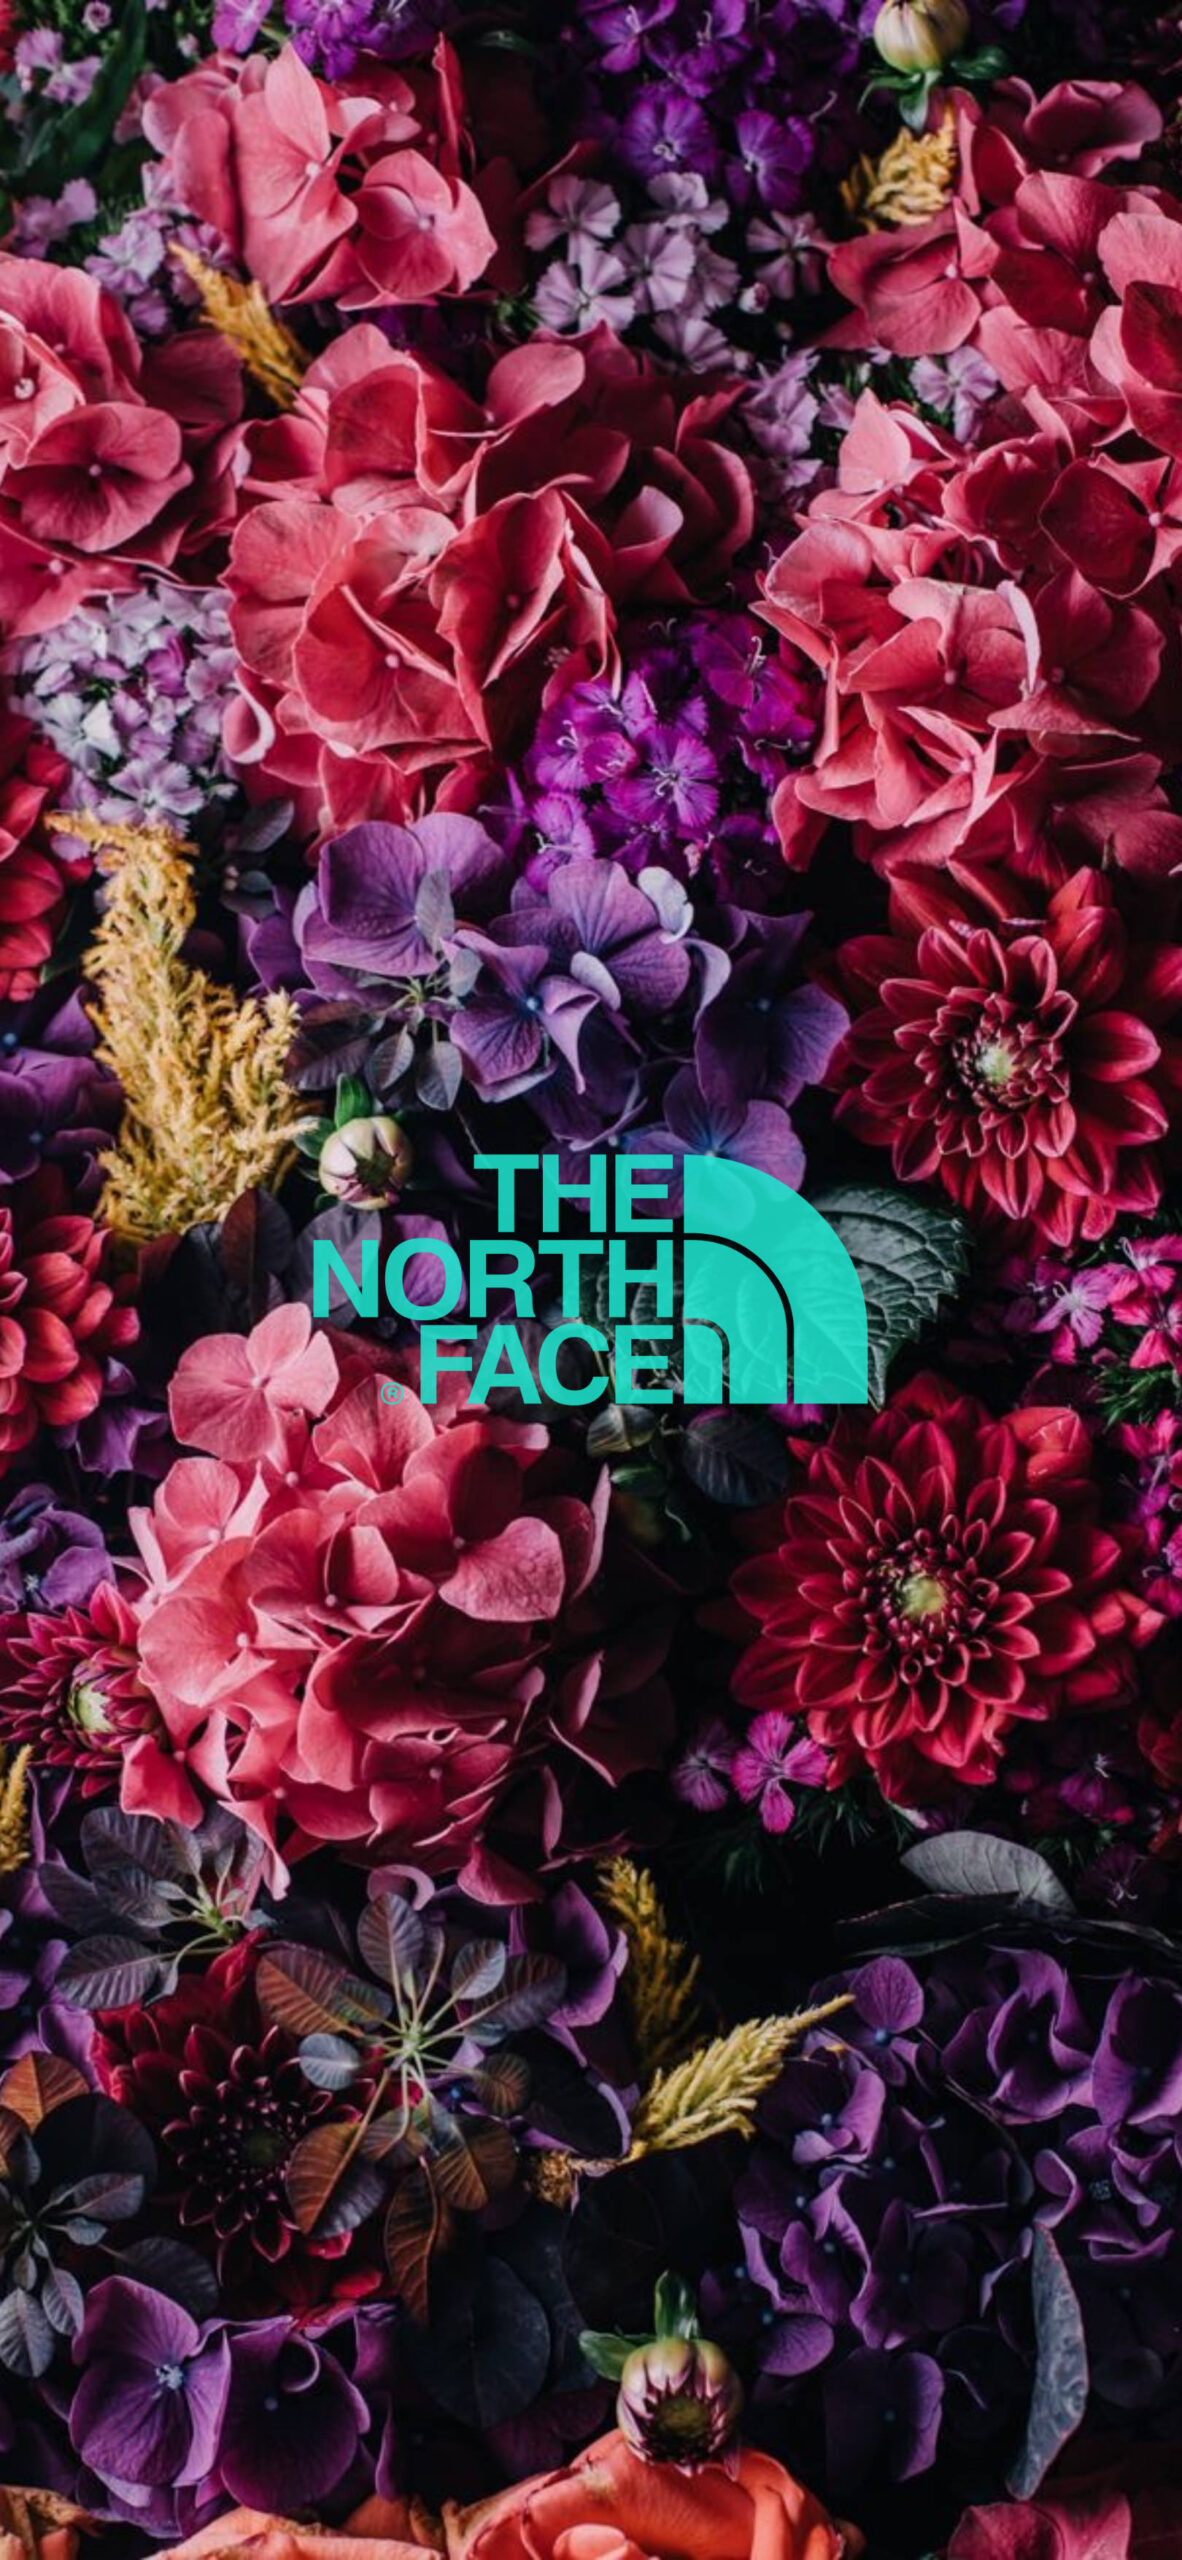 The North Face ザ ノース フェイスのおしゃれな無料高画質スマホ壁紙51枚 エモい スマホ壁紙辞典